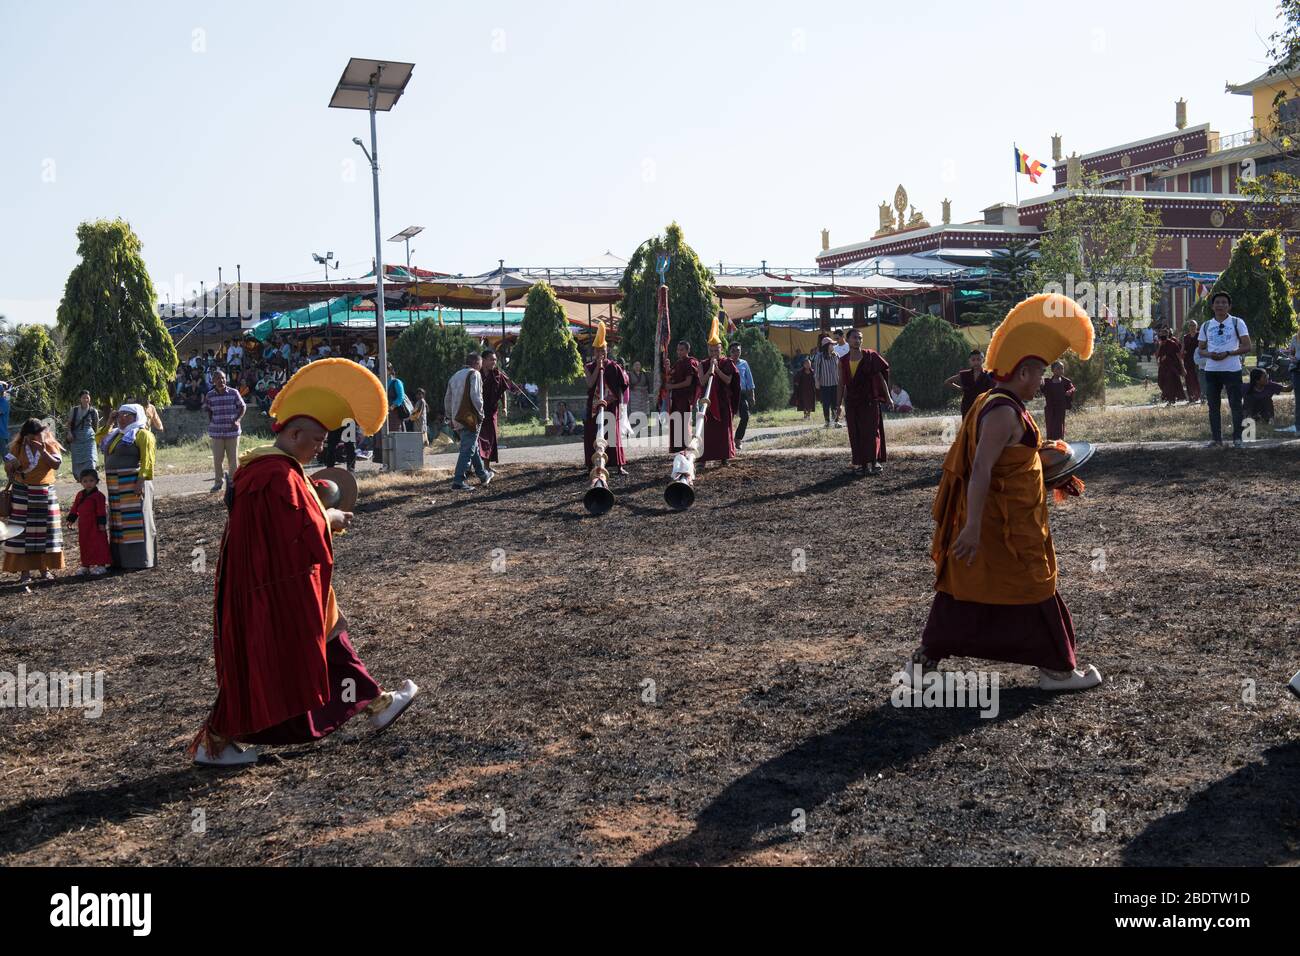 Cornes tibétaines et Chapeaux jaunes de Gelupa pendant la danse Cham, jouées pendant le Losar (nouvel an tibétain) dans la colonie tibétaine de Gurupura, Karnataka, Inde. Banque D'Images